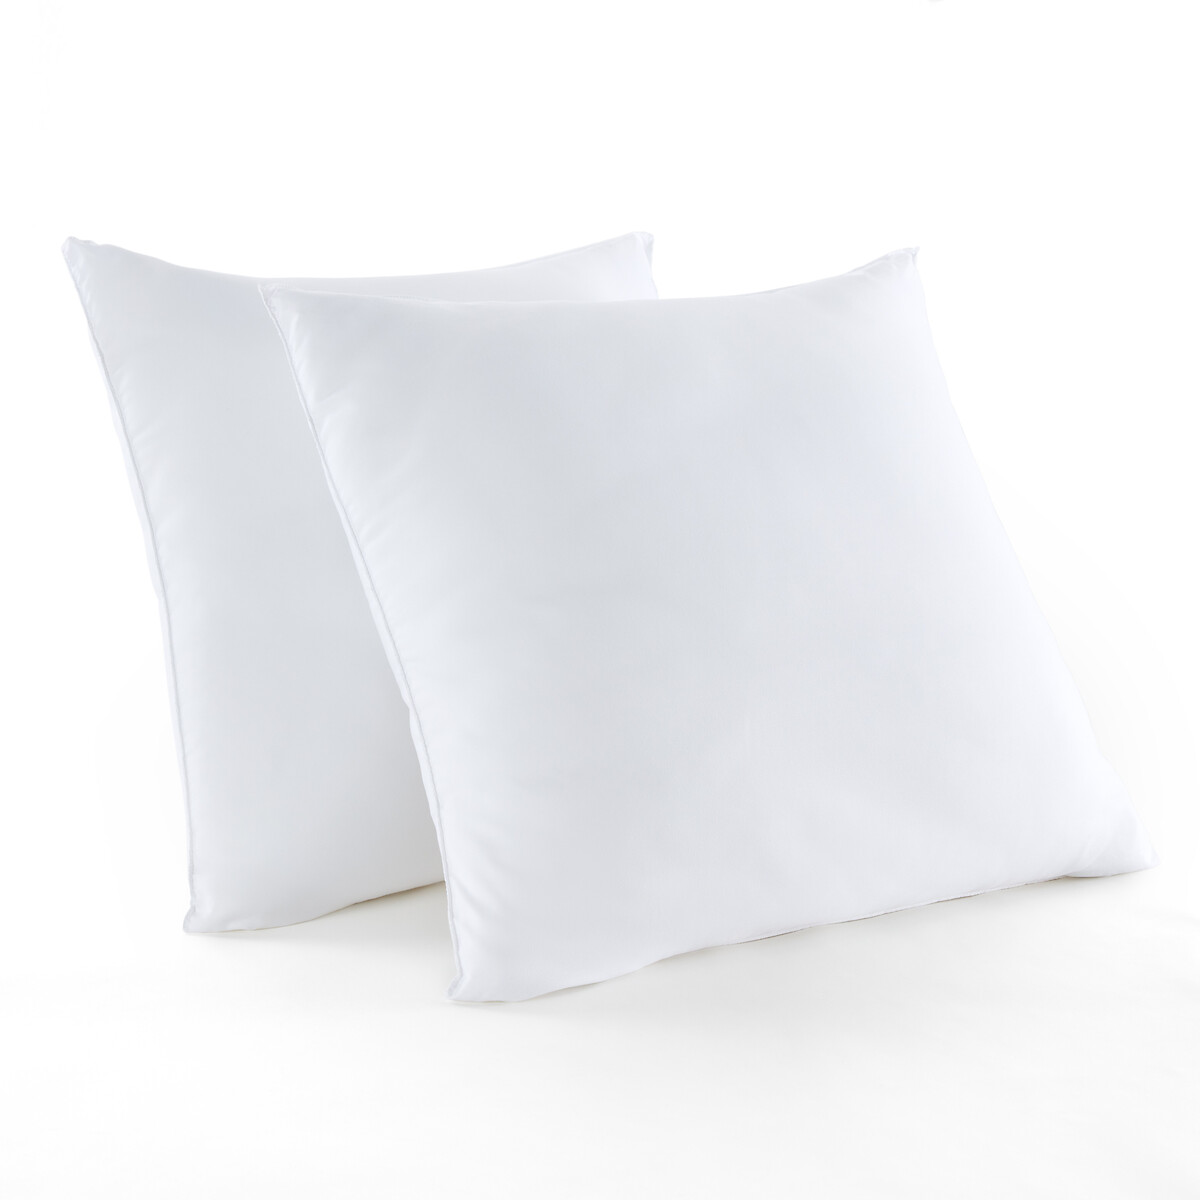 Комплект из микрофибры одеяло 1-сп LaRedoute подушка 140 x 200 см белый, размер 140 x 200 см - фото 4